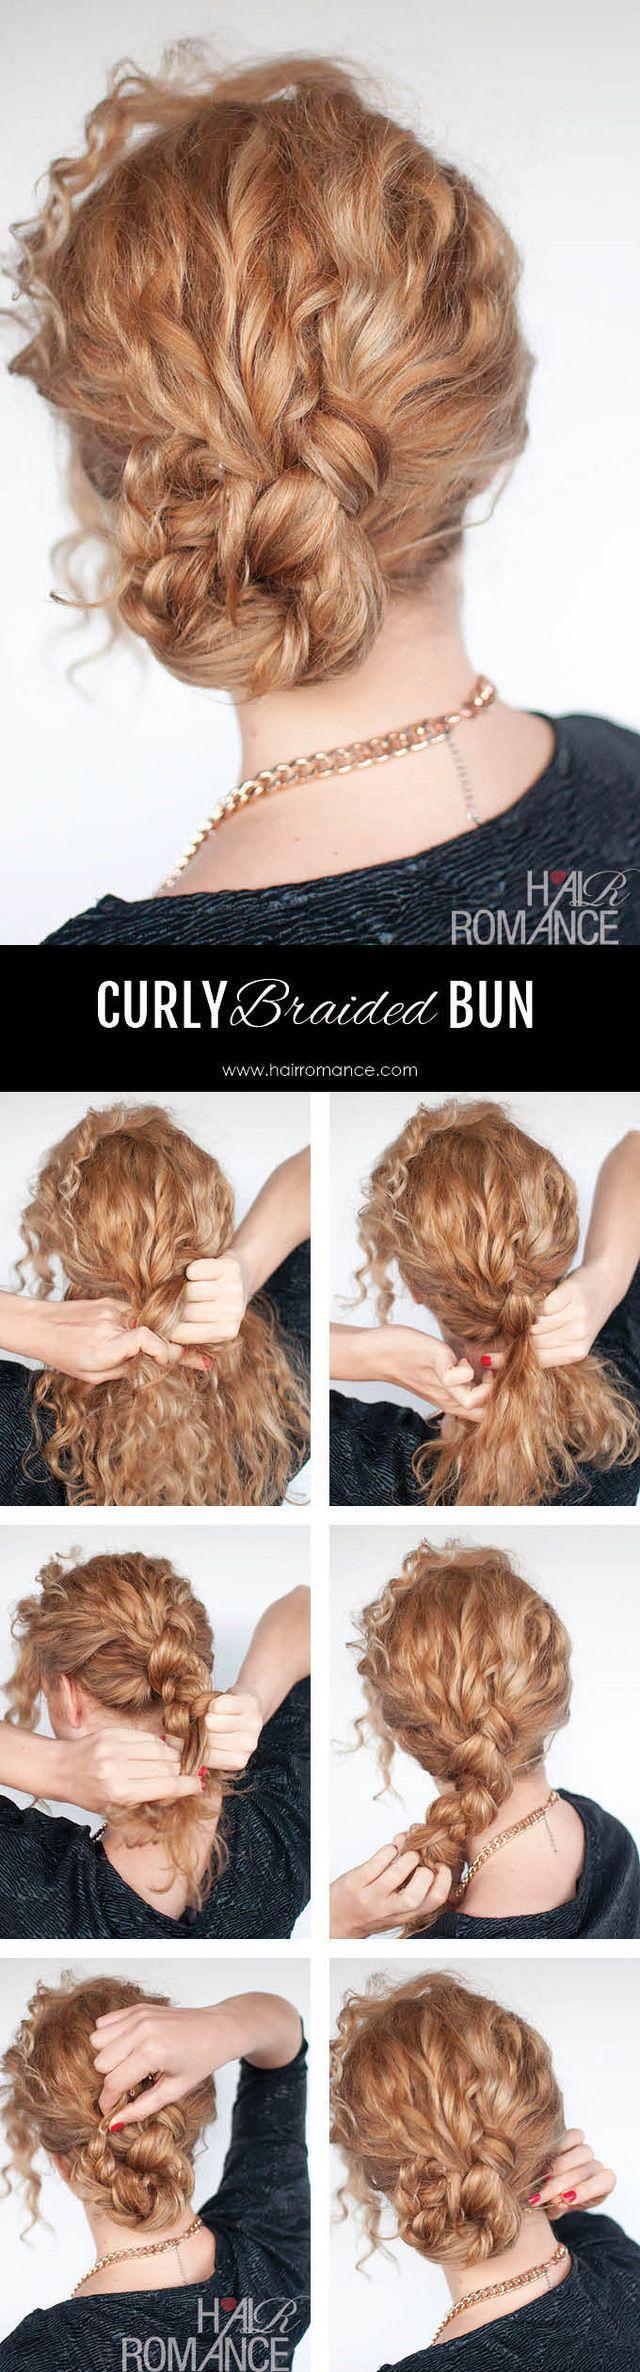 รูปภาพ:http://fashionsy.com/wp-content/uploads/2015/12/Hair-Romance-Easy-curly-braided-bun-hairstyle-tutorial-4.jpg